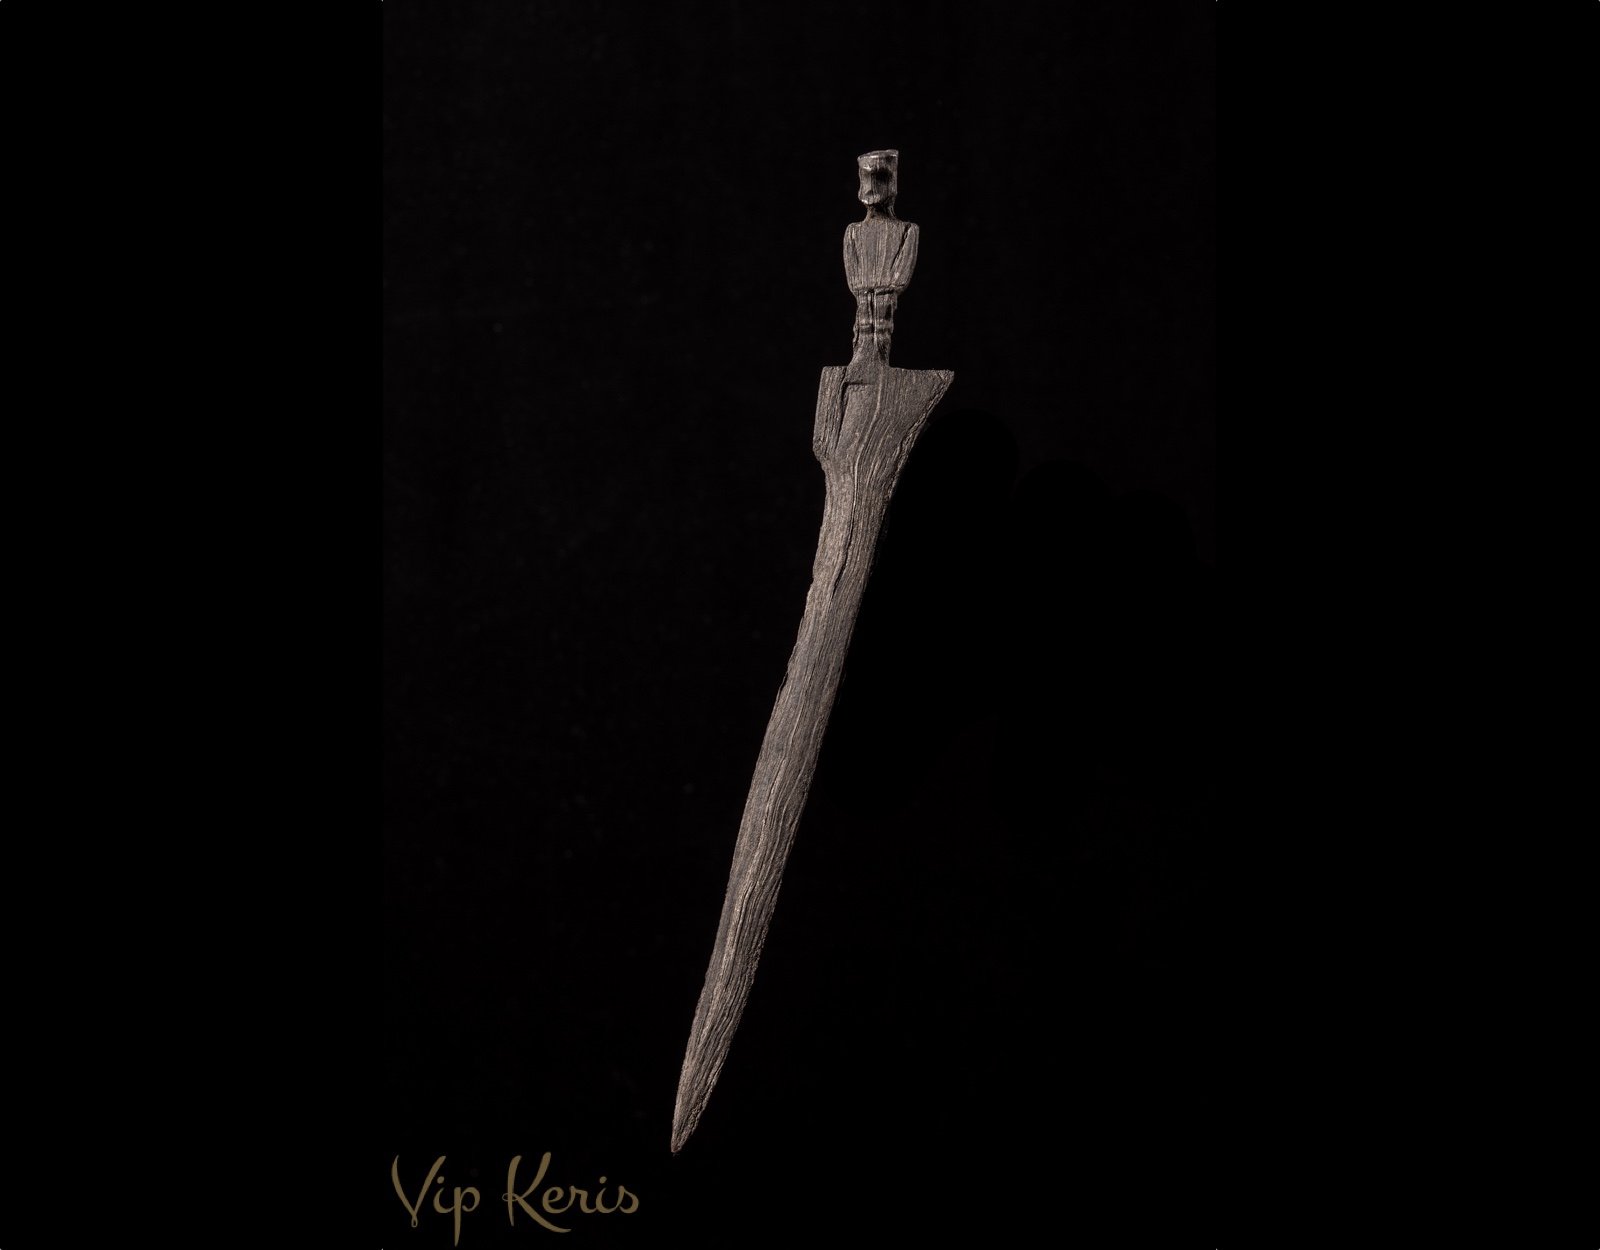 Нож Крис Sajen, стихия Воздух-огонь. фото VipKeris